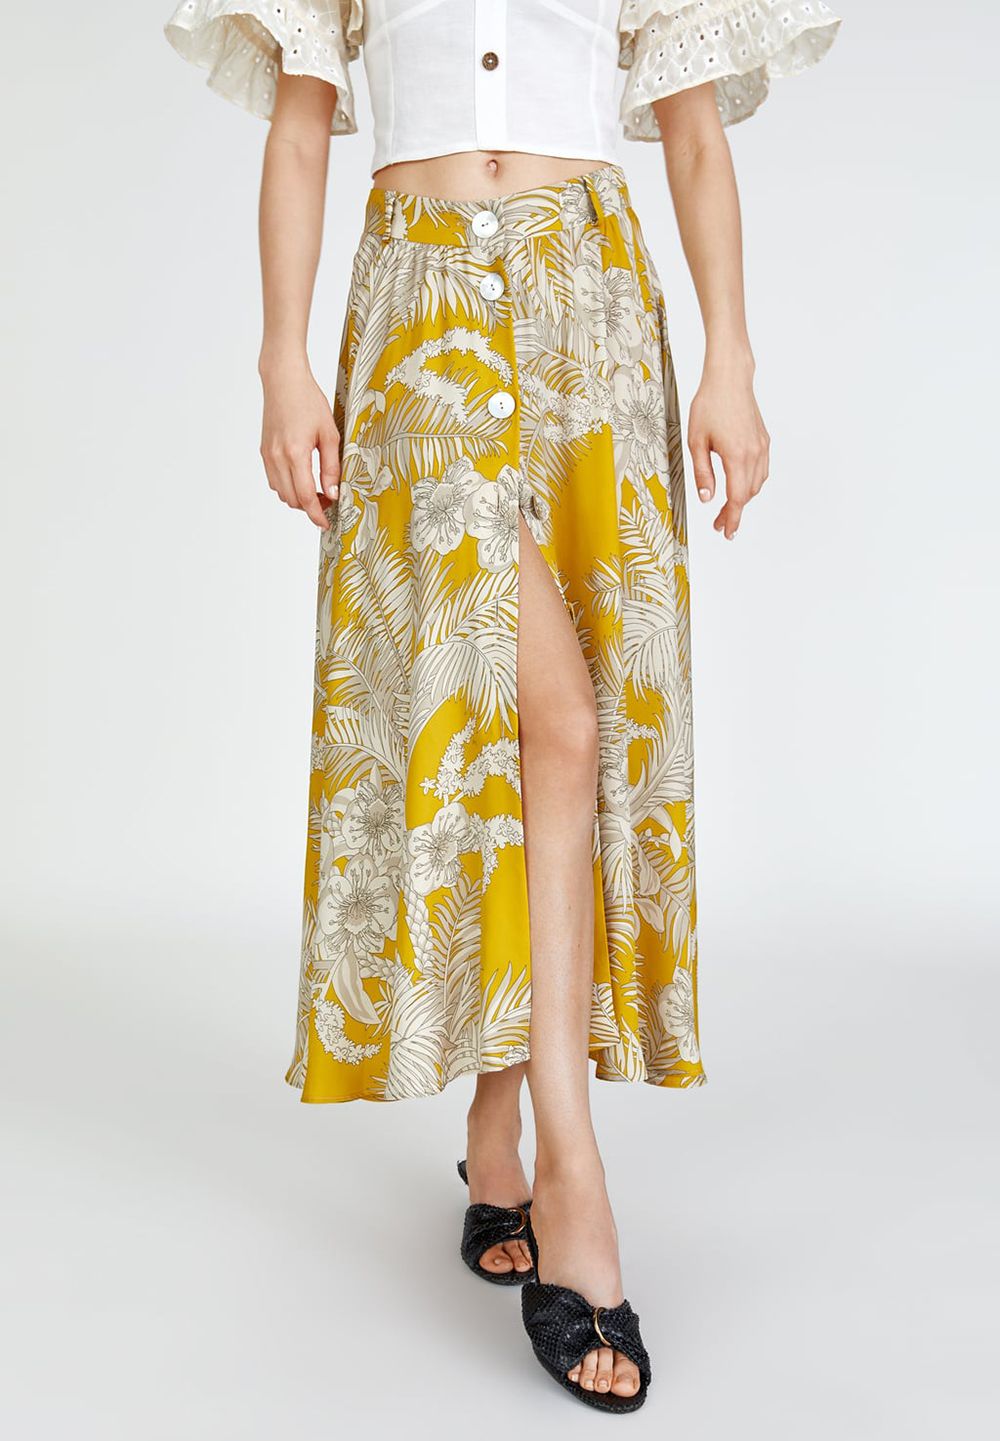 La falda amarilla con estampado floral, de Zara